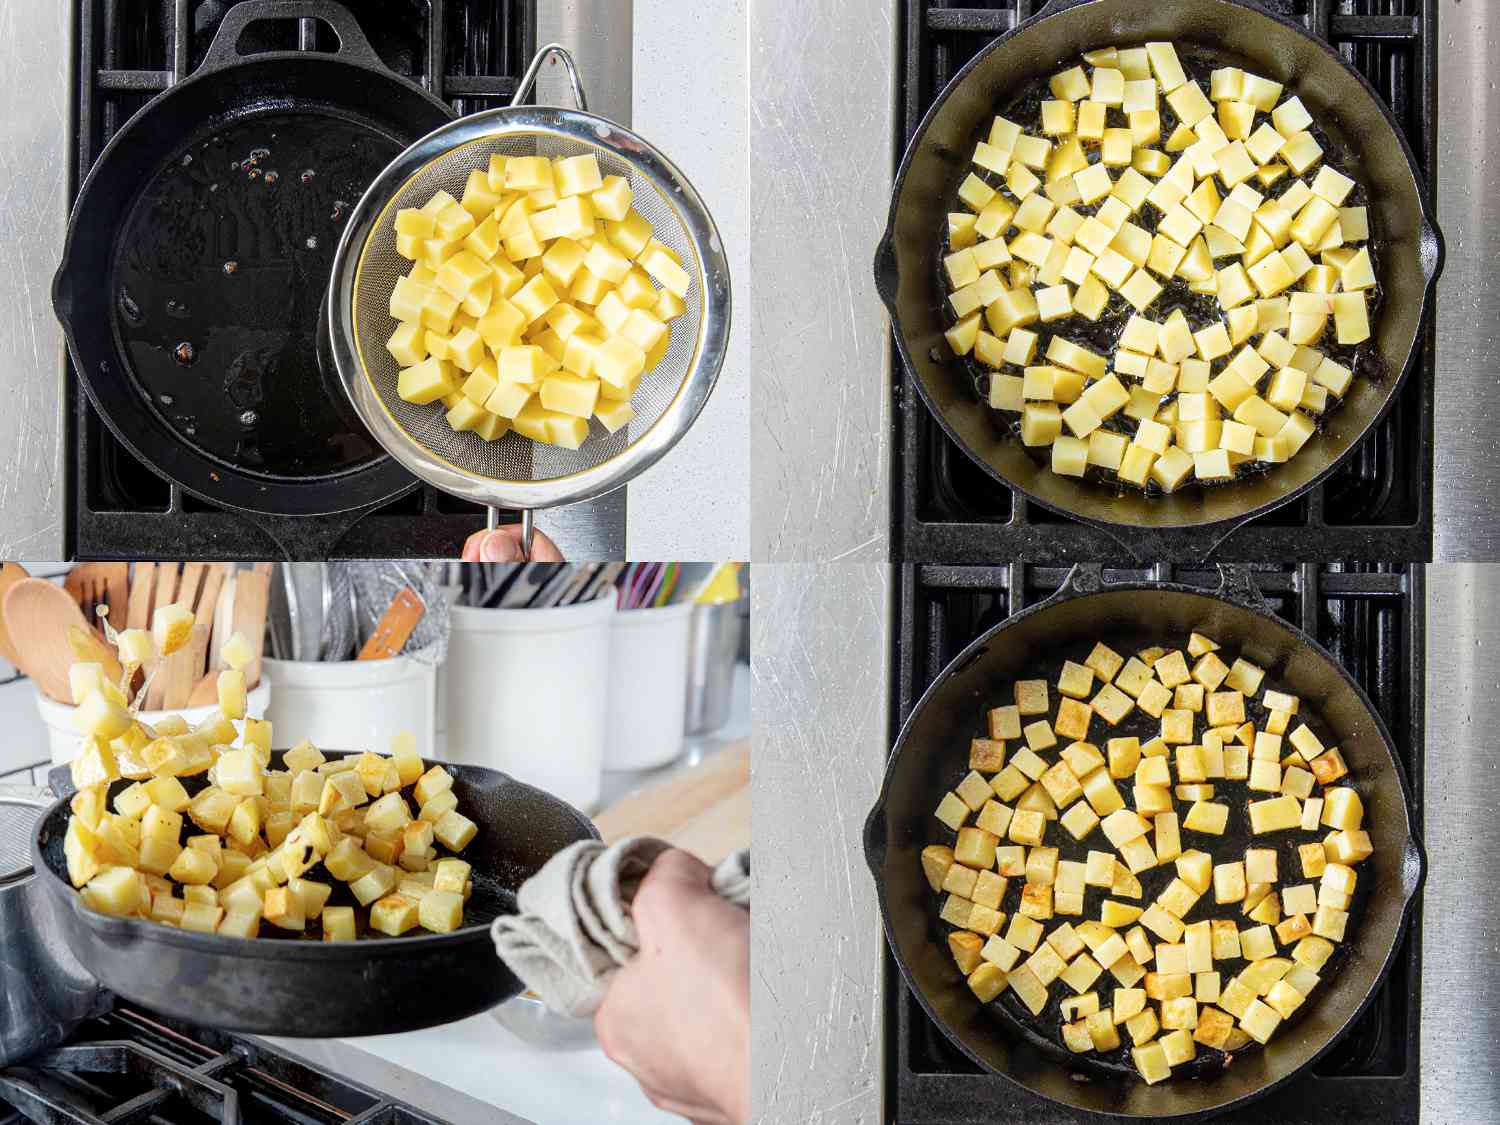 四个图像拼贴。左上:将煮熟的土豆放入铸铁煎锅中。右上:土豆在铸铁煎锅里煮。左下:像翻煎饼一样翻土豆。右下:在铸铁煎锅里煎成褐色的土豆。